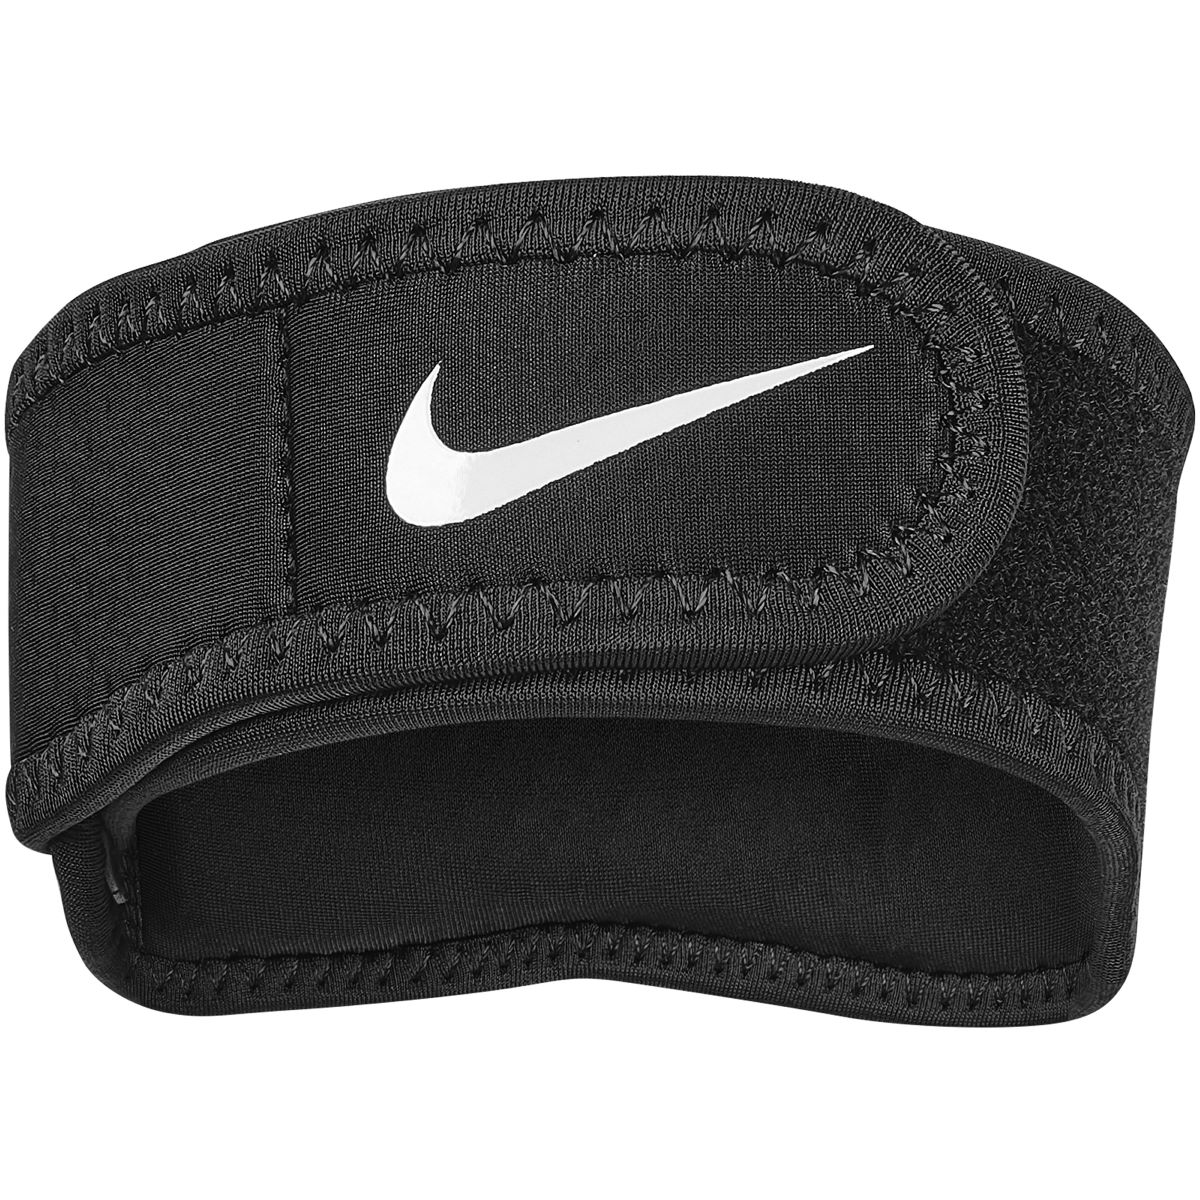 Banda de codo Nike Pro 3.0 - Manguitos de sujeción